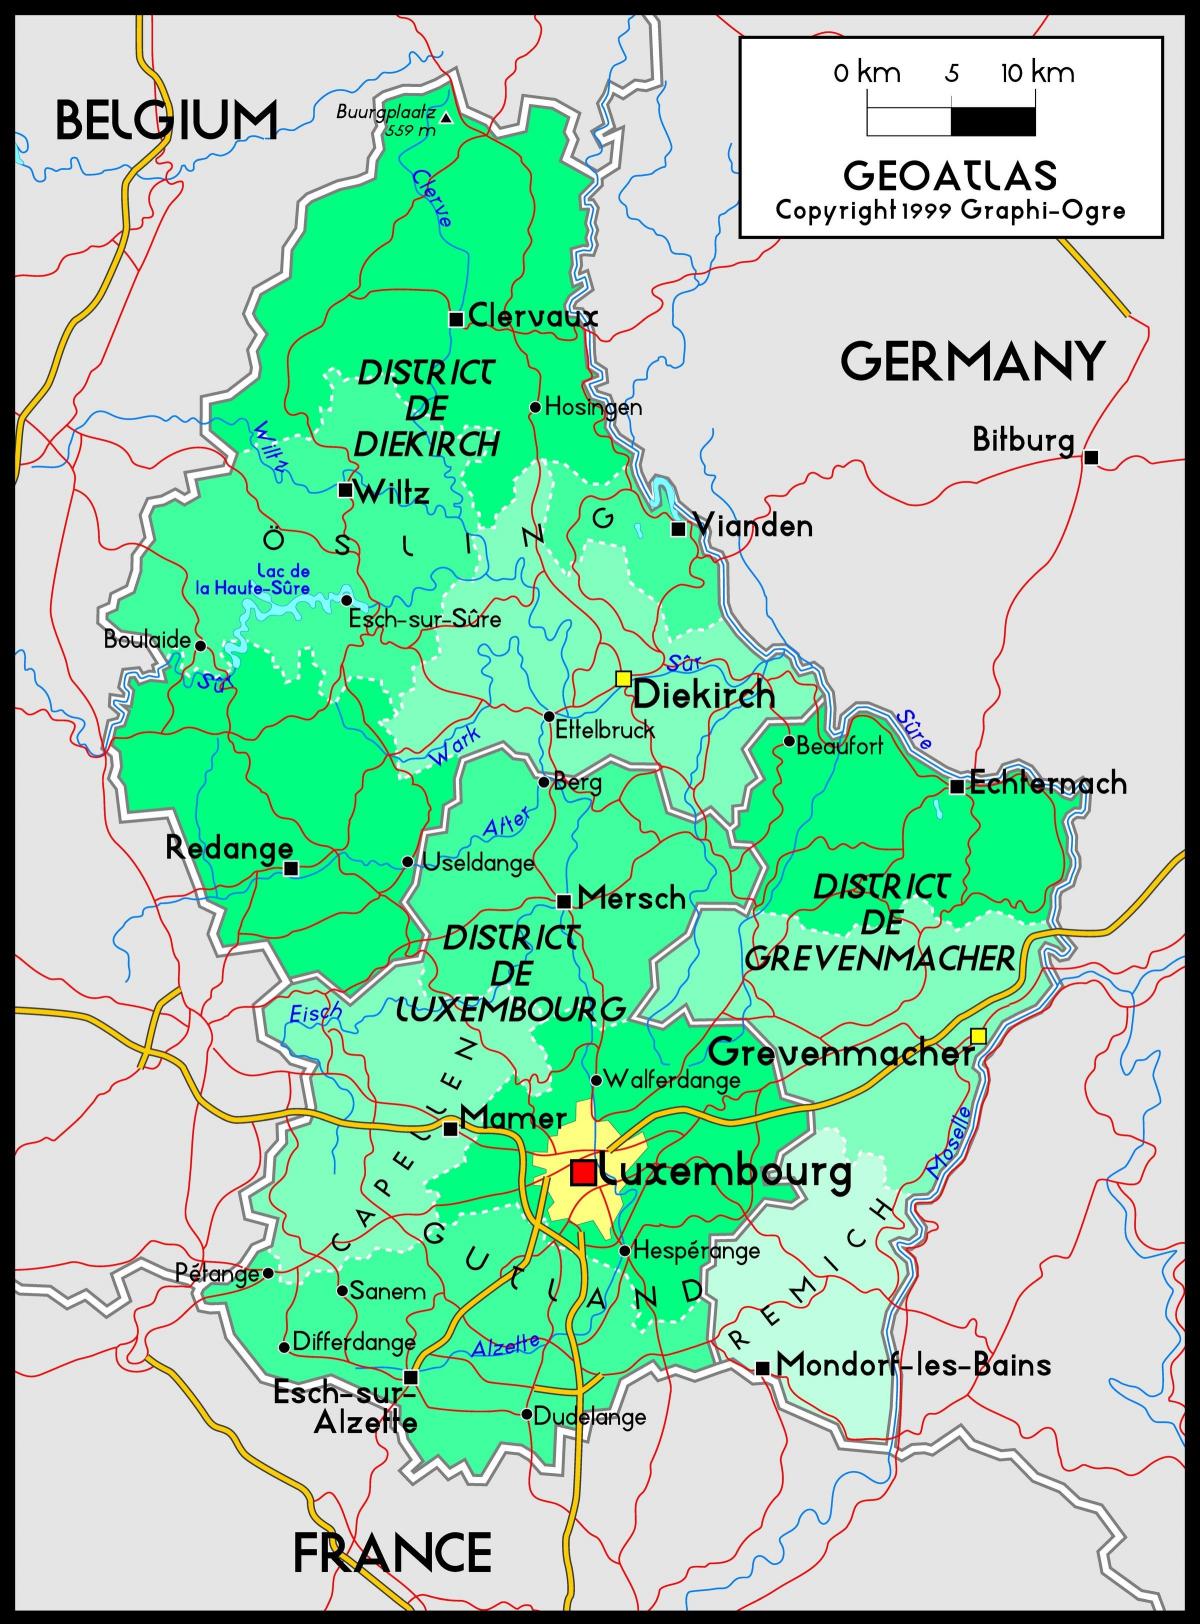 Liuksemburgas vieta žemėlapyje